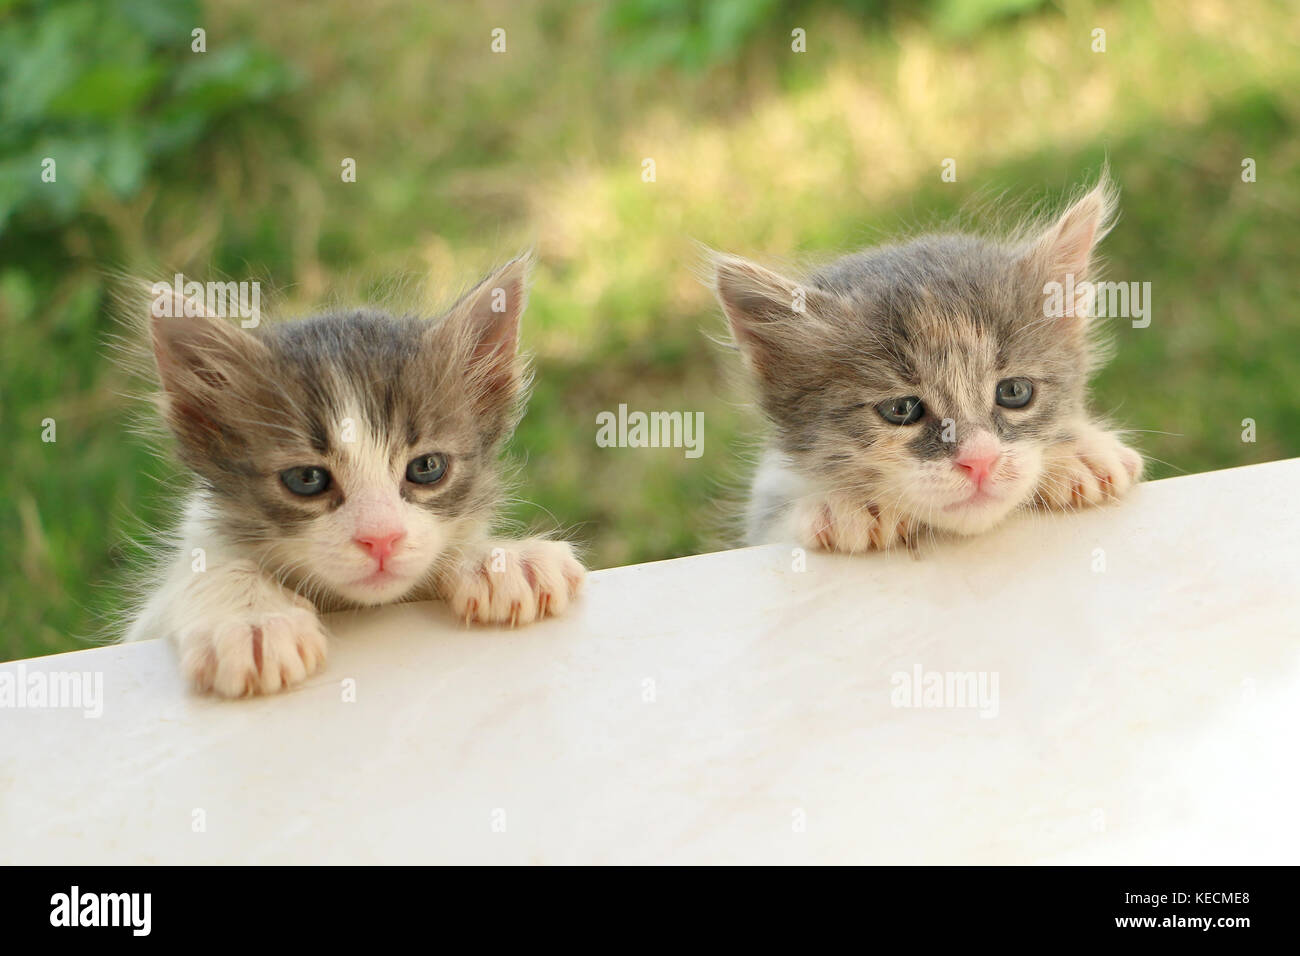 Gattini carini immagini e fotografie stock ad alta risoluzione - Alamy